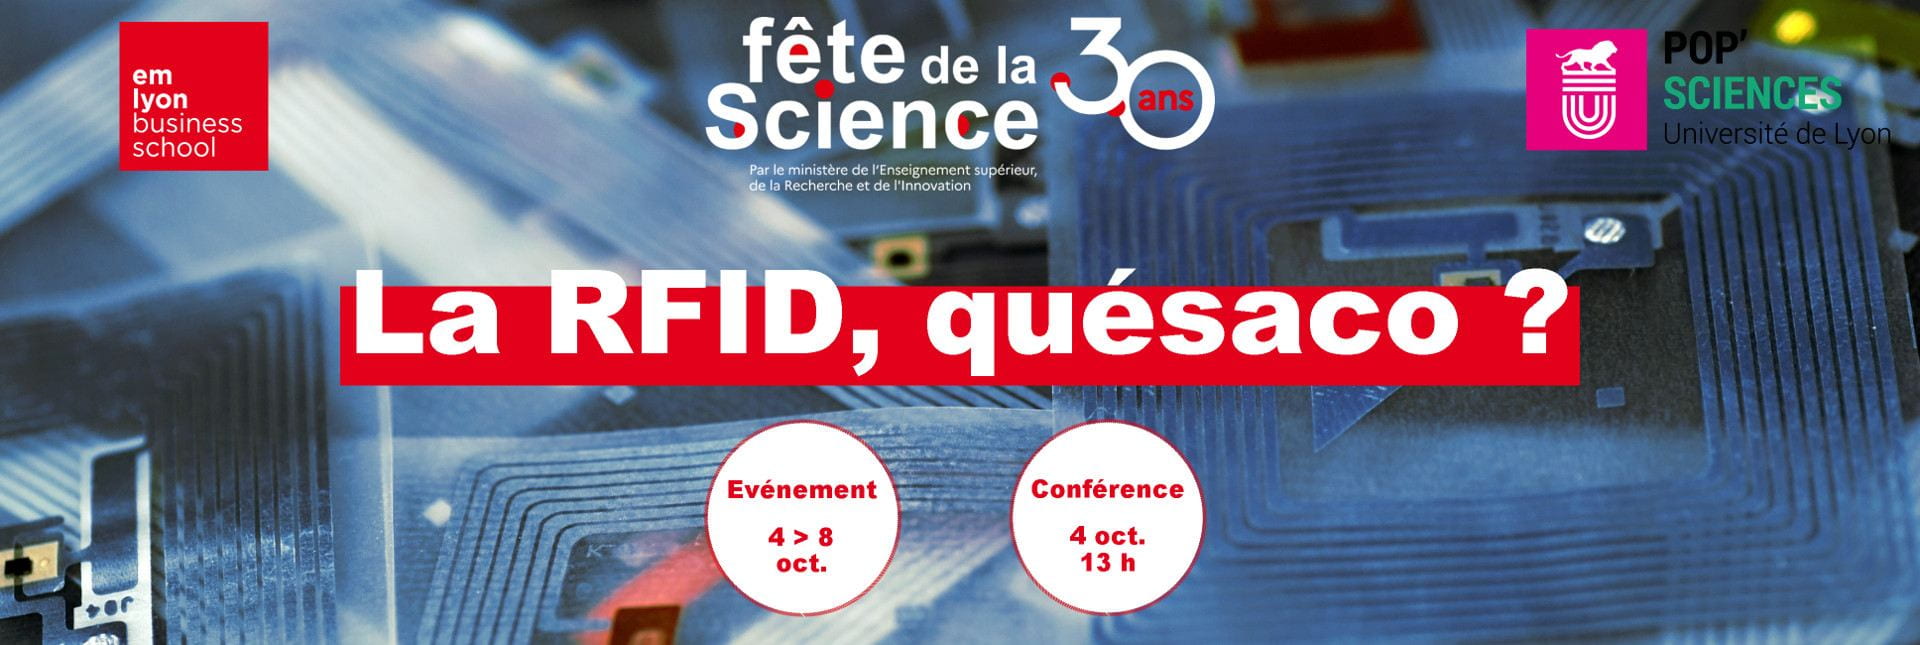 Fete de la science 2021 : la RFID Quésaco